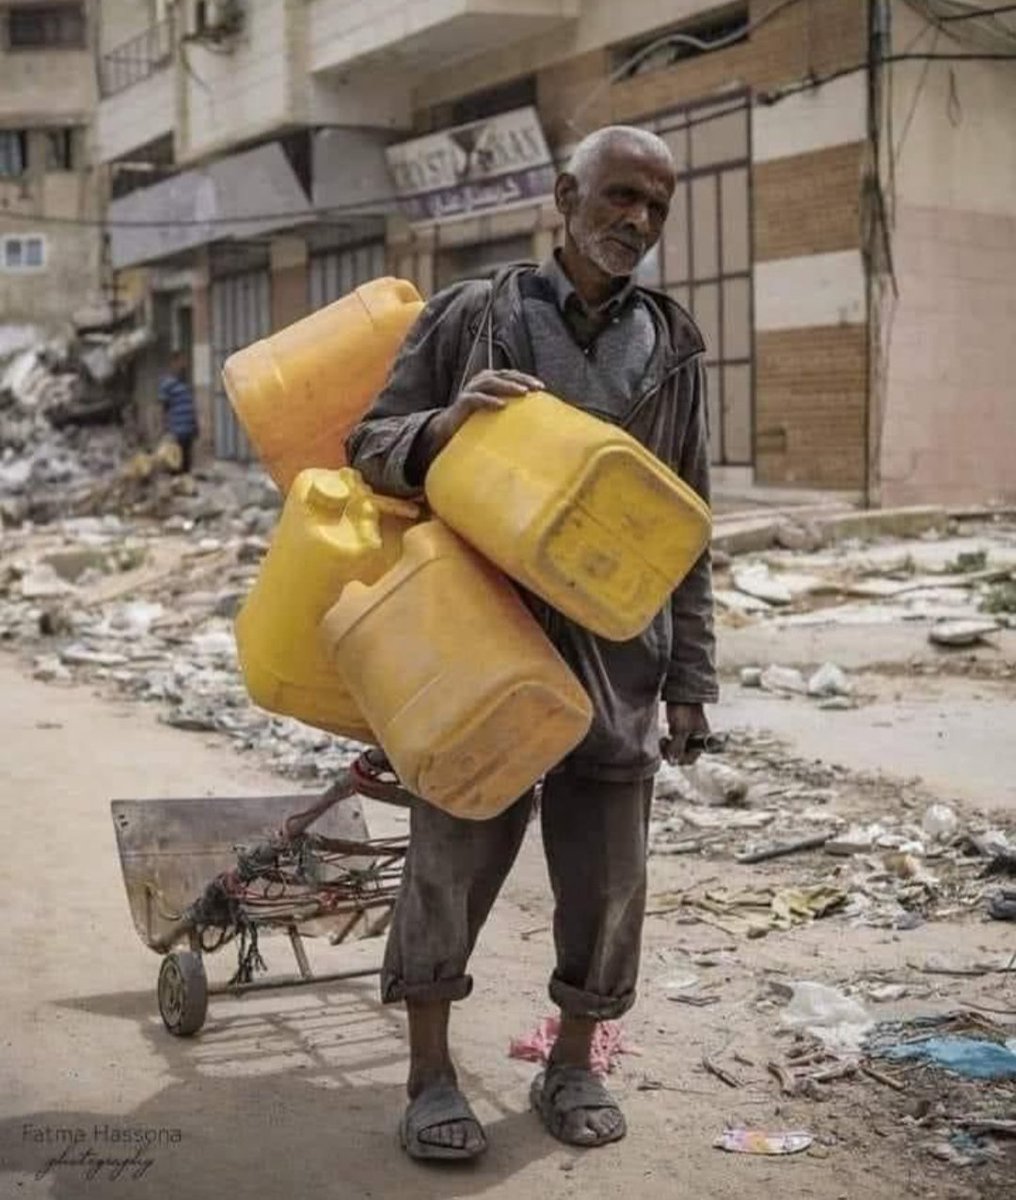 Seorang pria tua di GHZ membawa galon kosong, mencari air minum untuk keluarganya 😢

TERUS BOIKOT DAN SHARE BERITA DARI AKUN DI BAWAH INI 💚 😭